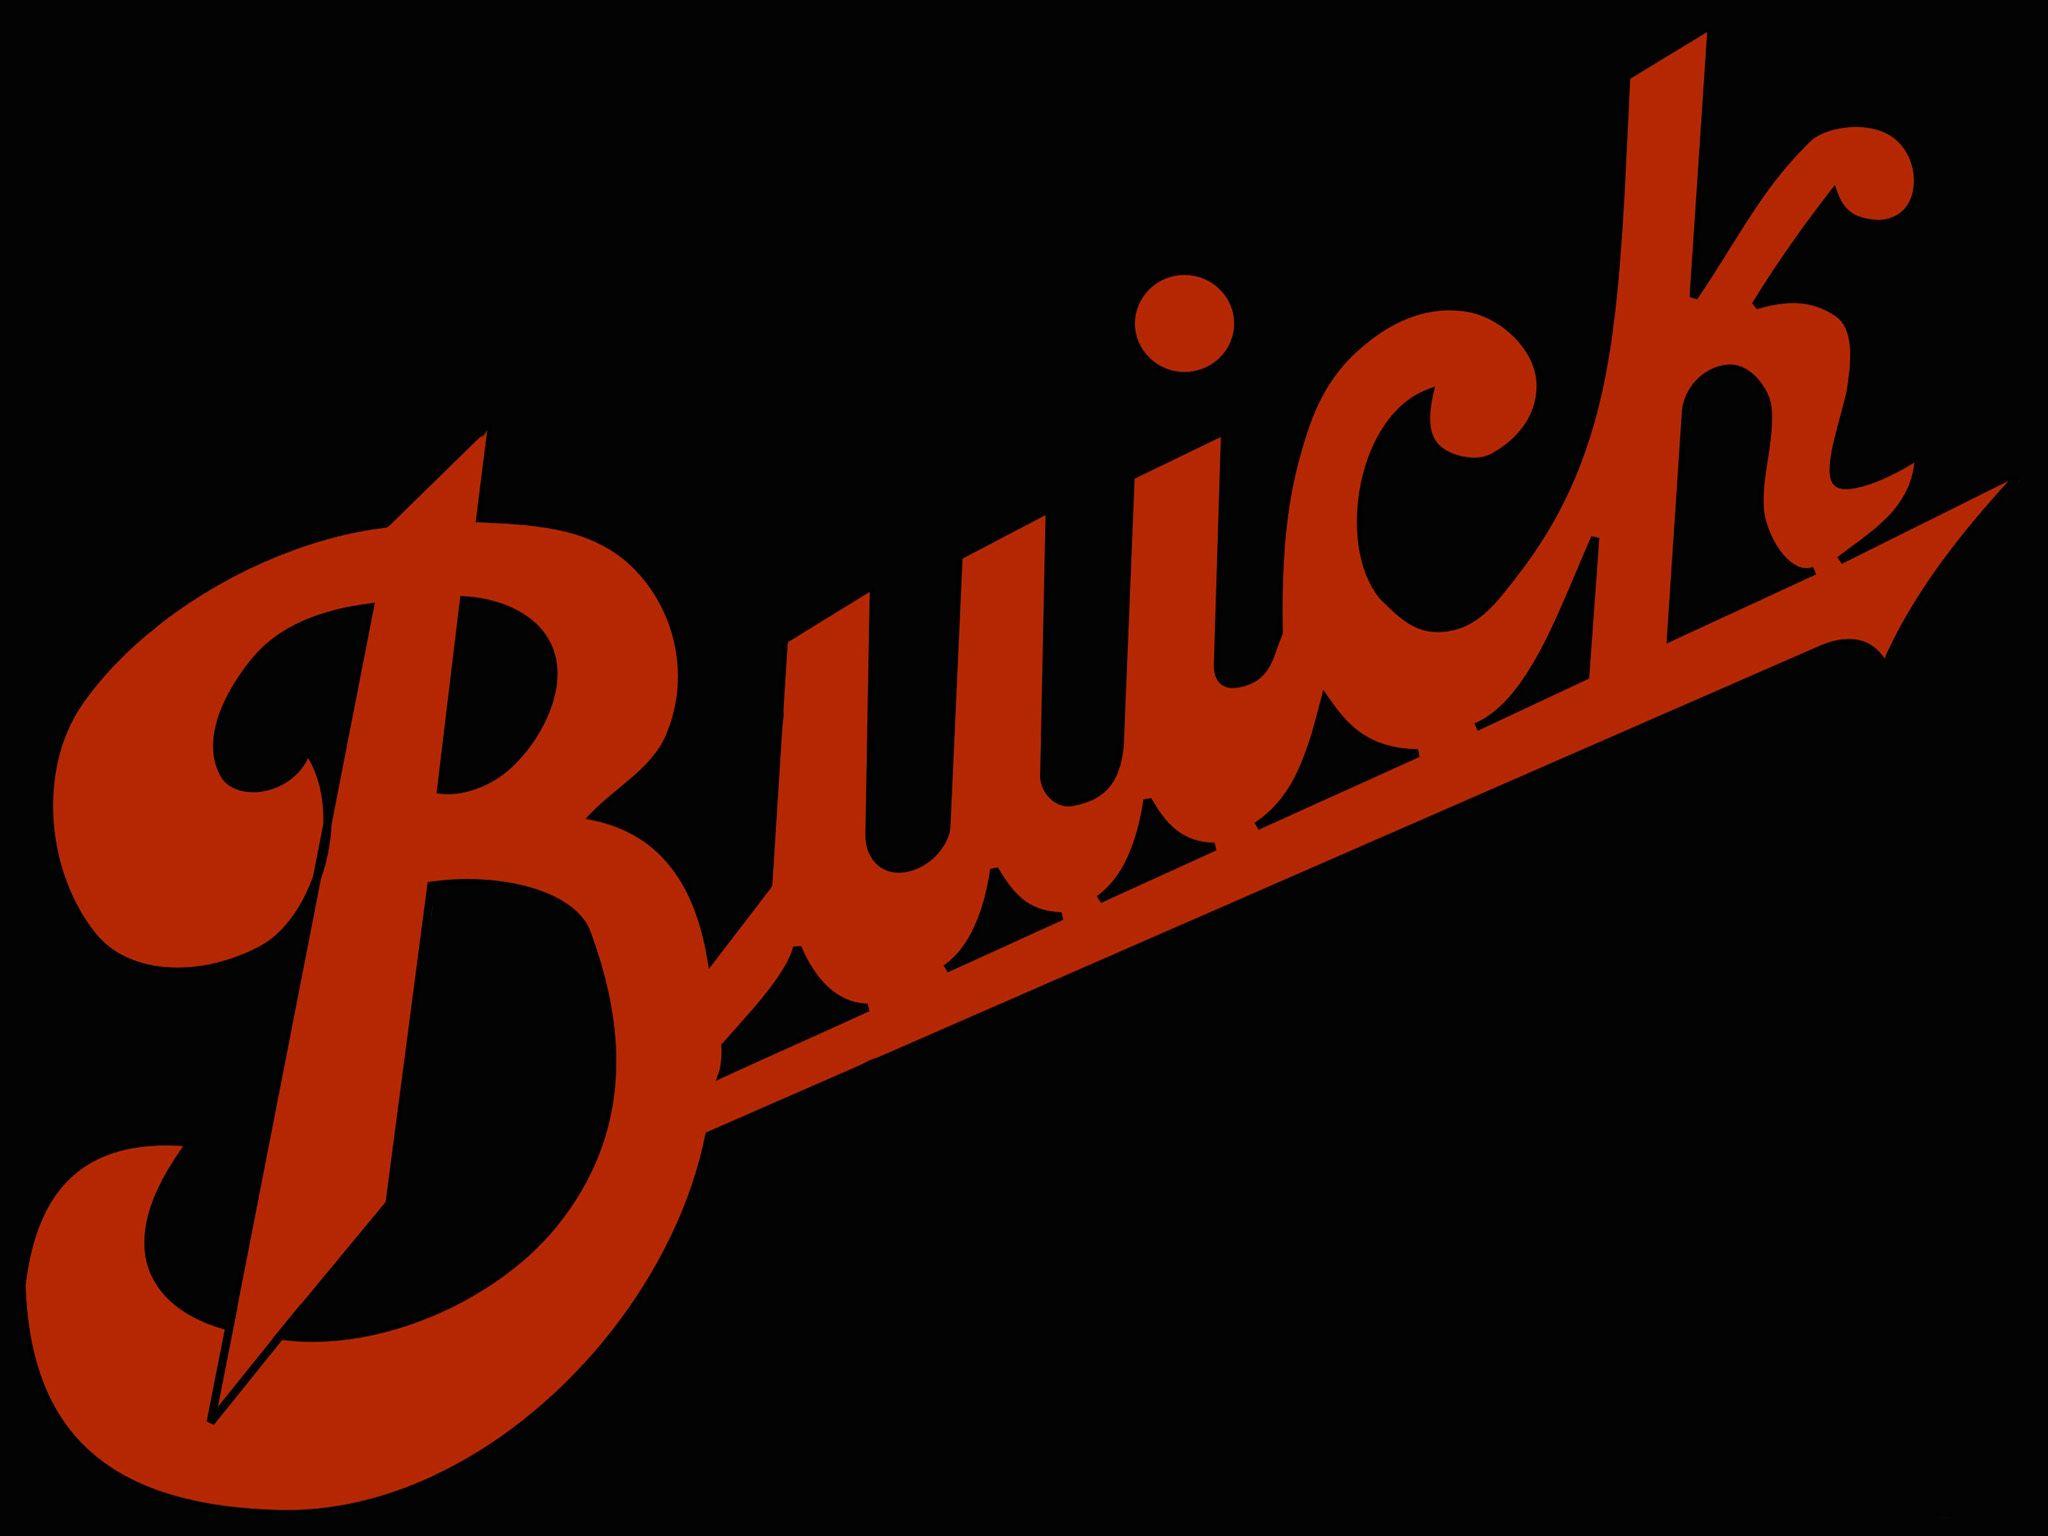 Vintage Buick Logo - Old buick Logos